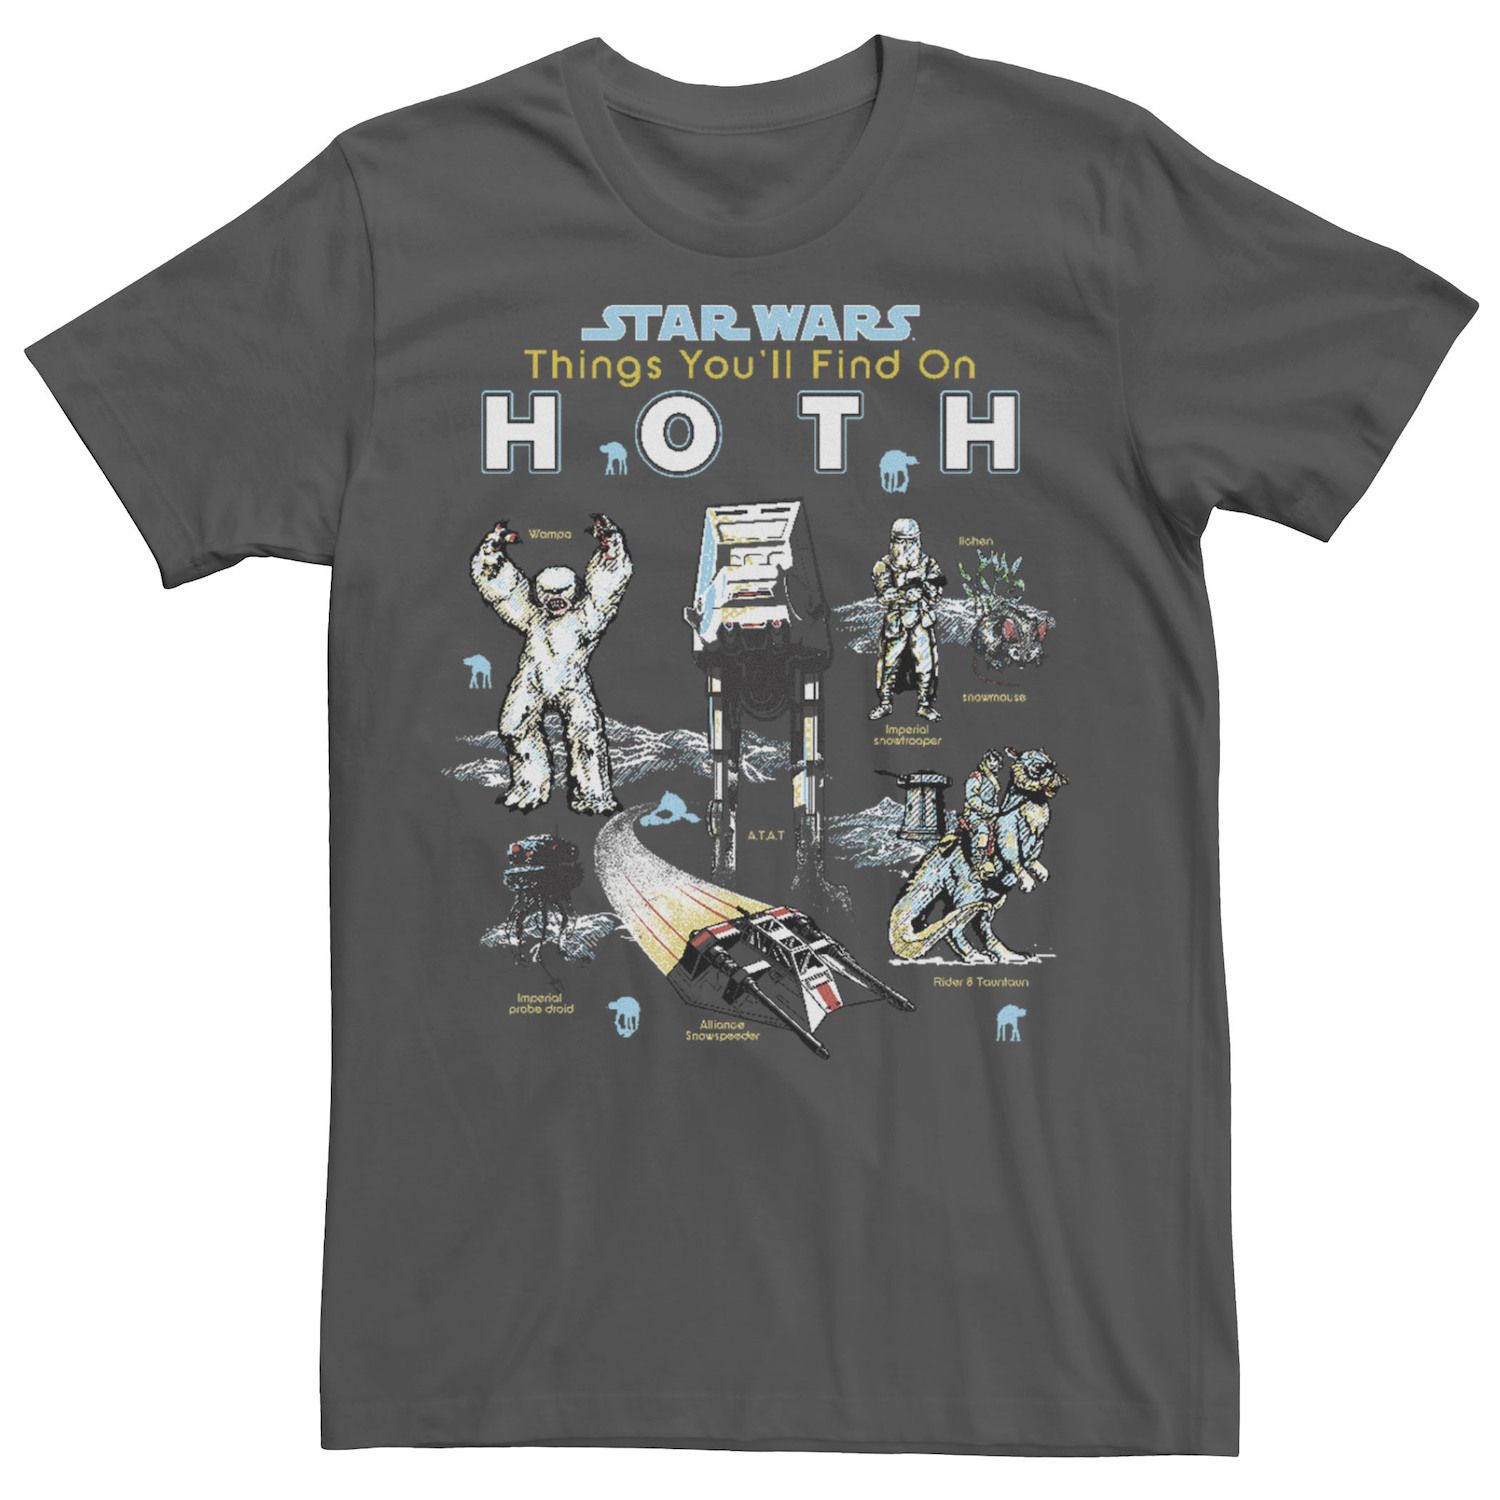 Мужские вещи из «Звездных войн», которые вы найдете на футболке Hoth Licensed Character